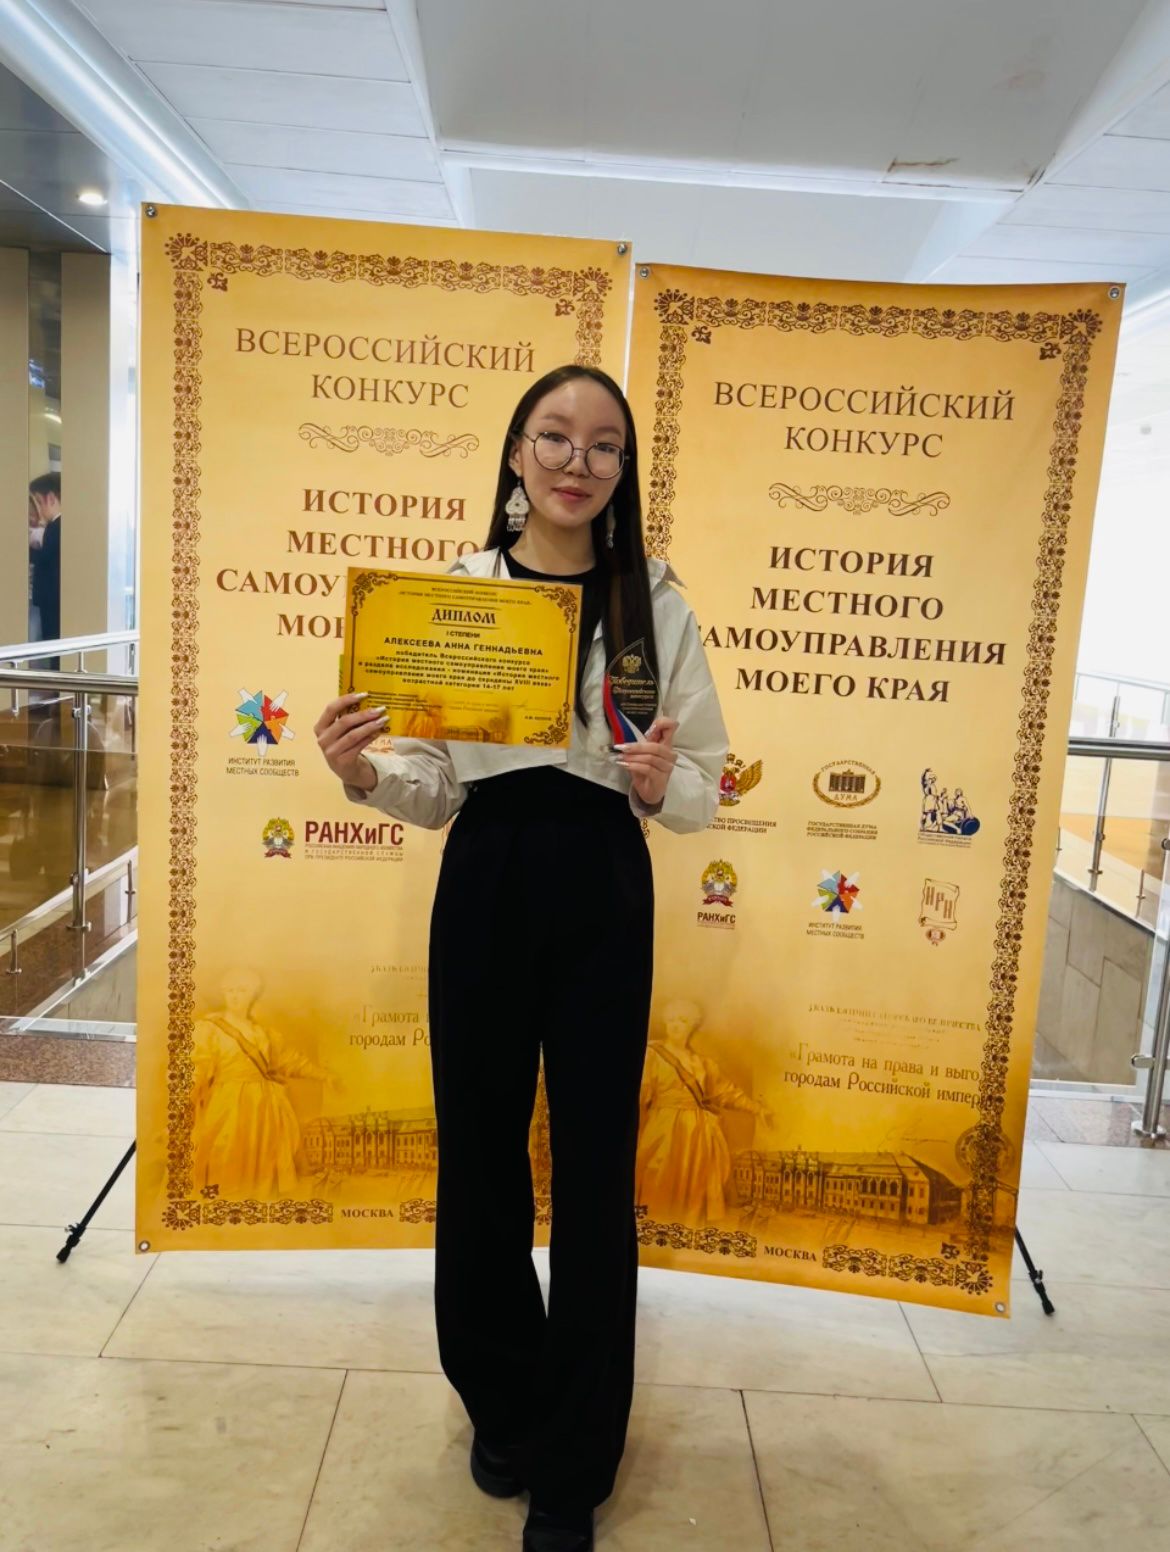 Школьница из Якутии заняла 1 место во всероссийском конкурсе по истории местного самоуправления